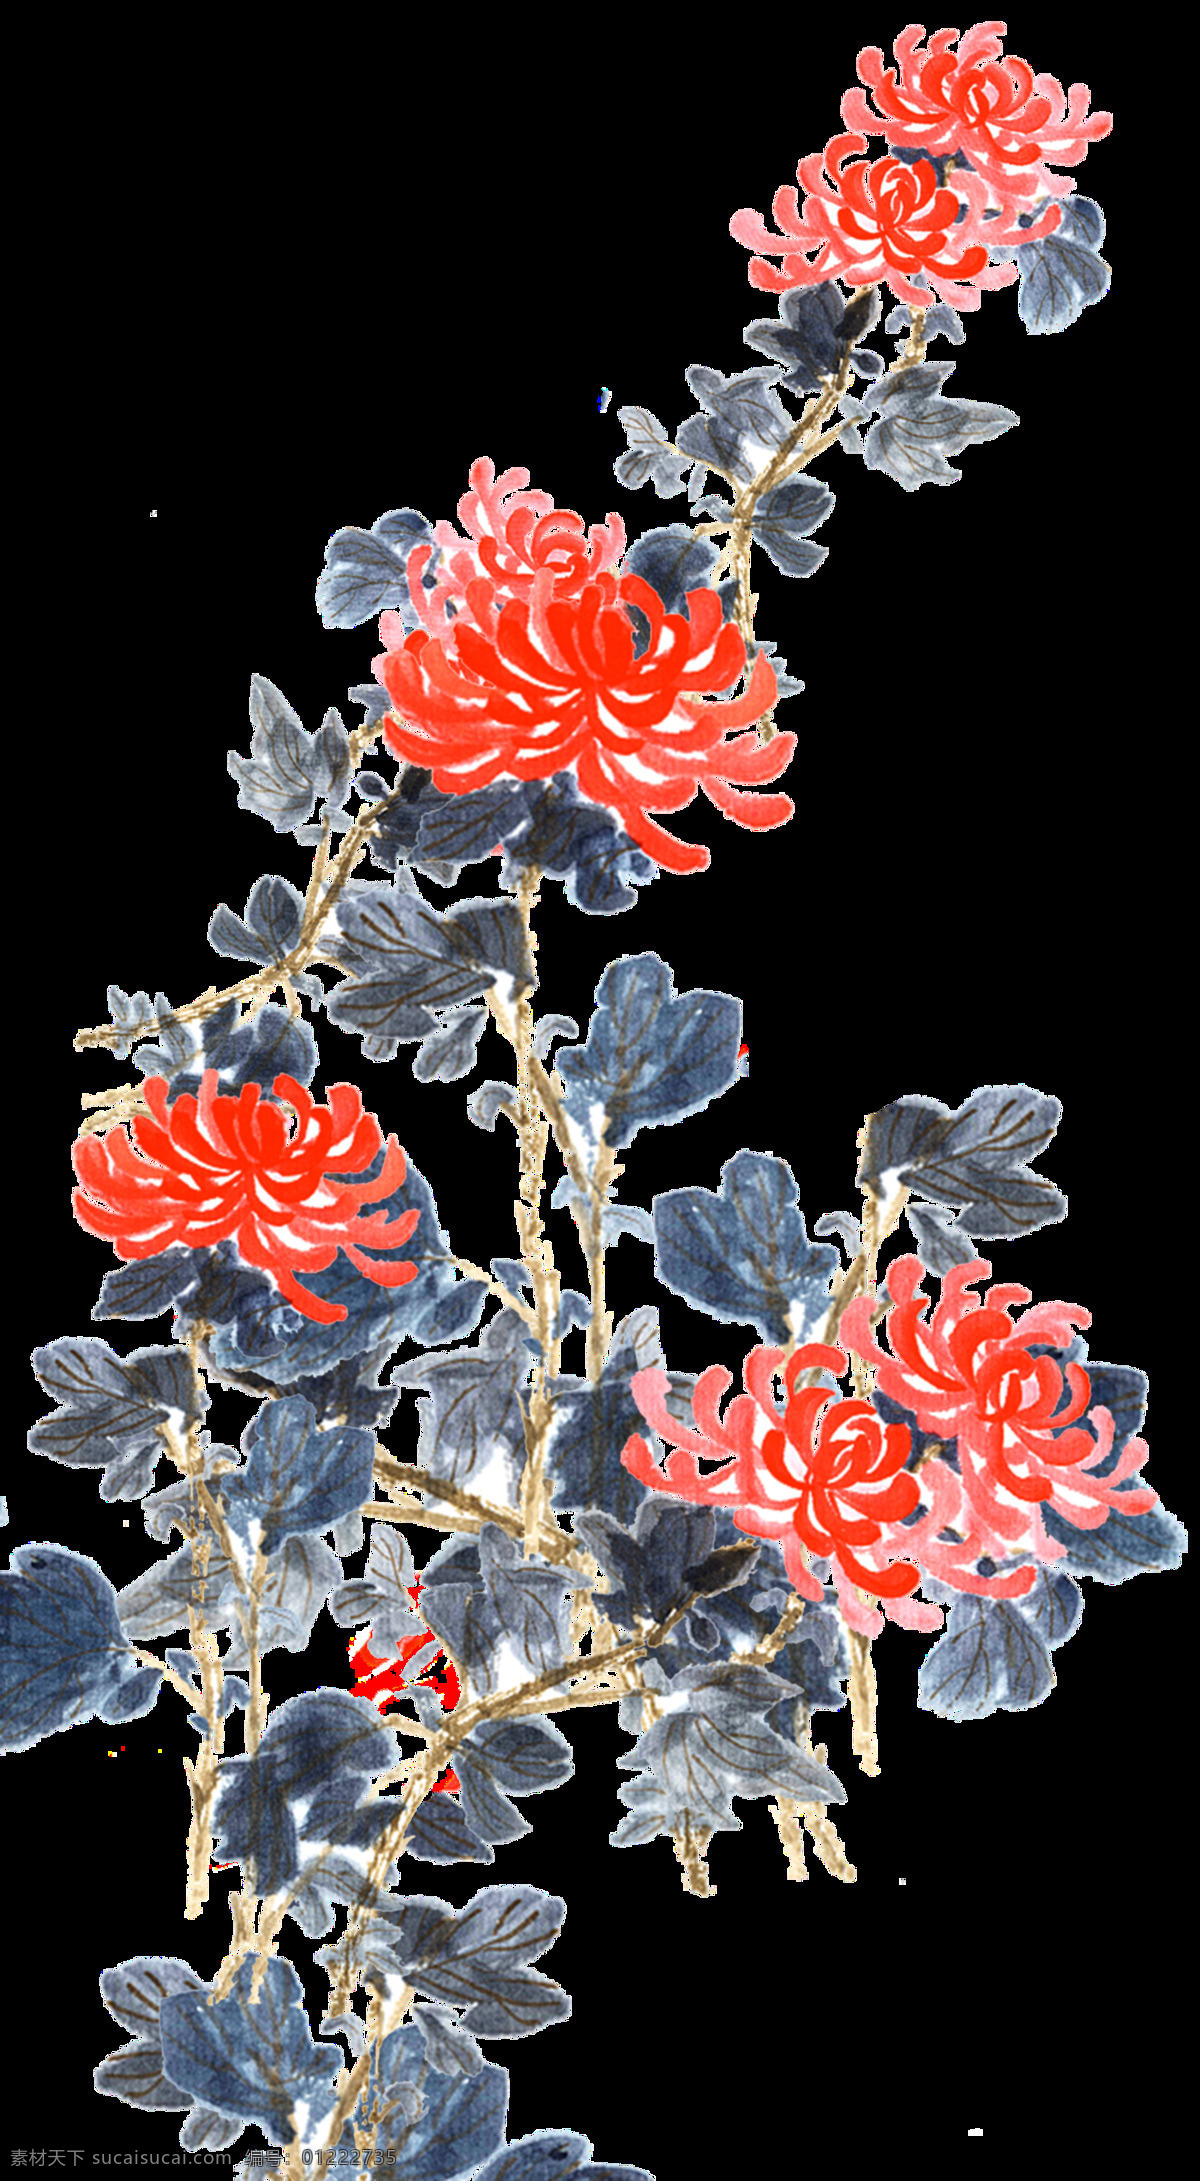 生机勃勃 橙红色 手绘 菊花 装饰 元素 橙红色花朵 深色叶子 植物 装饰元素